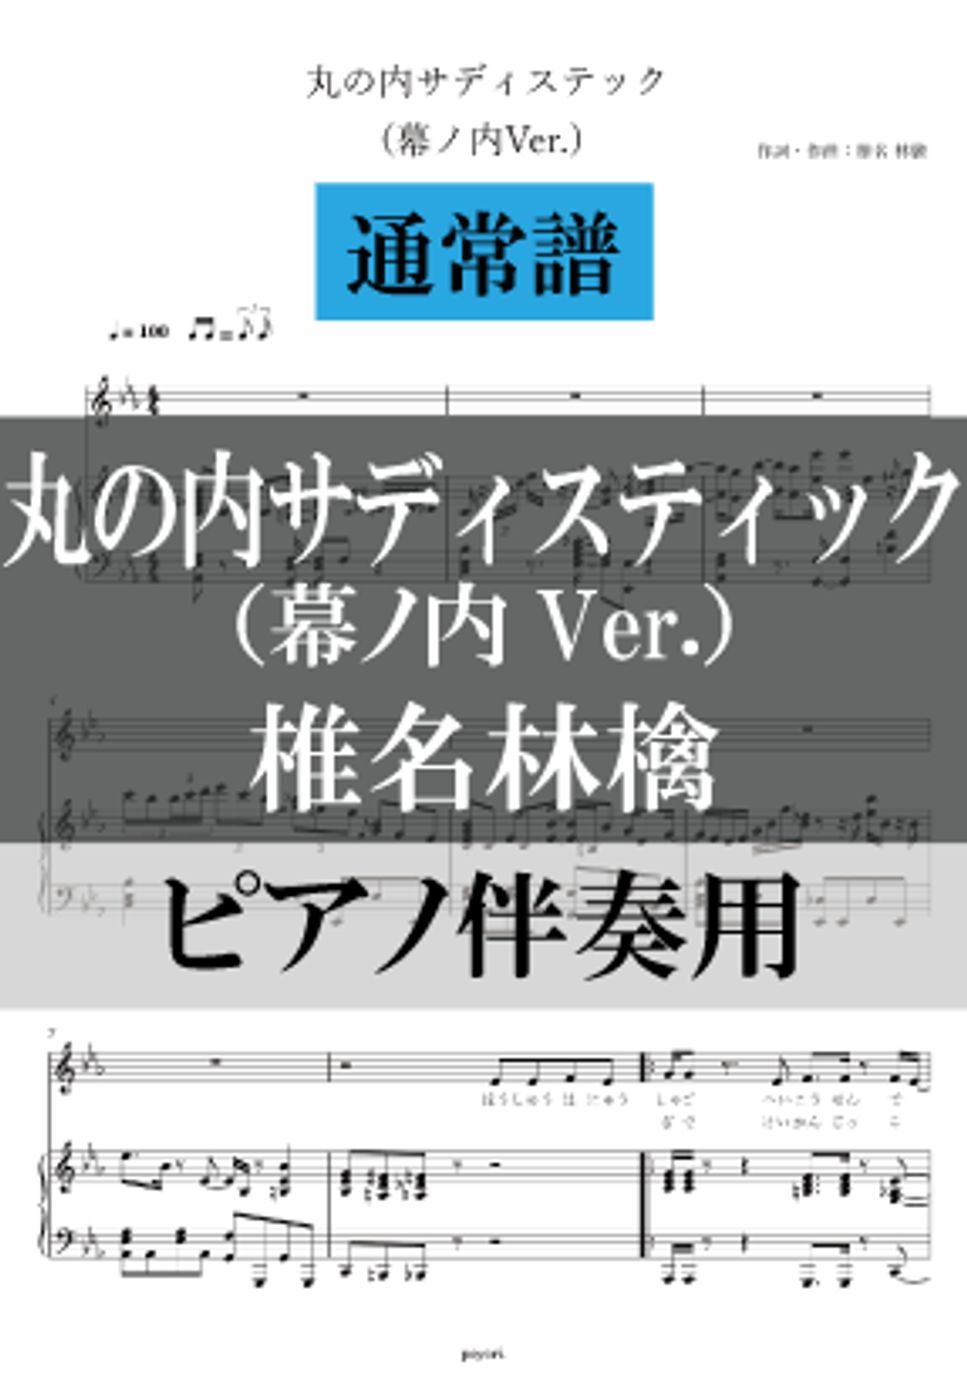 椎名林檎 - 丸の内サディスティック (ピアノ伴奏/通常譜) by poyori